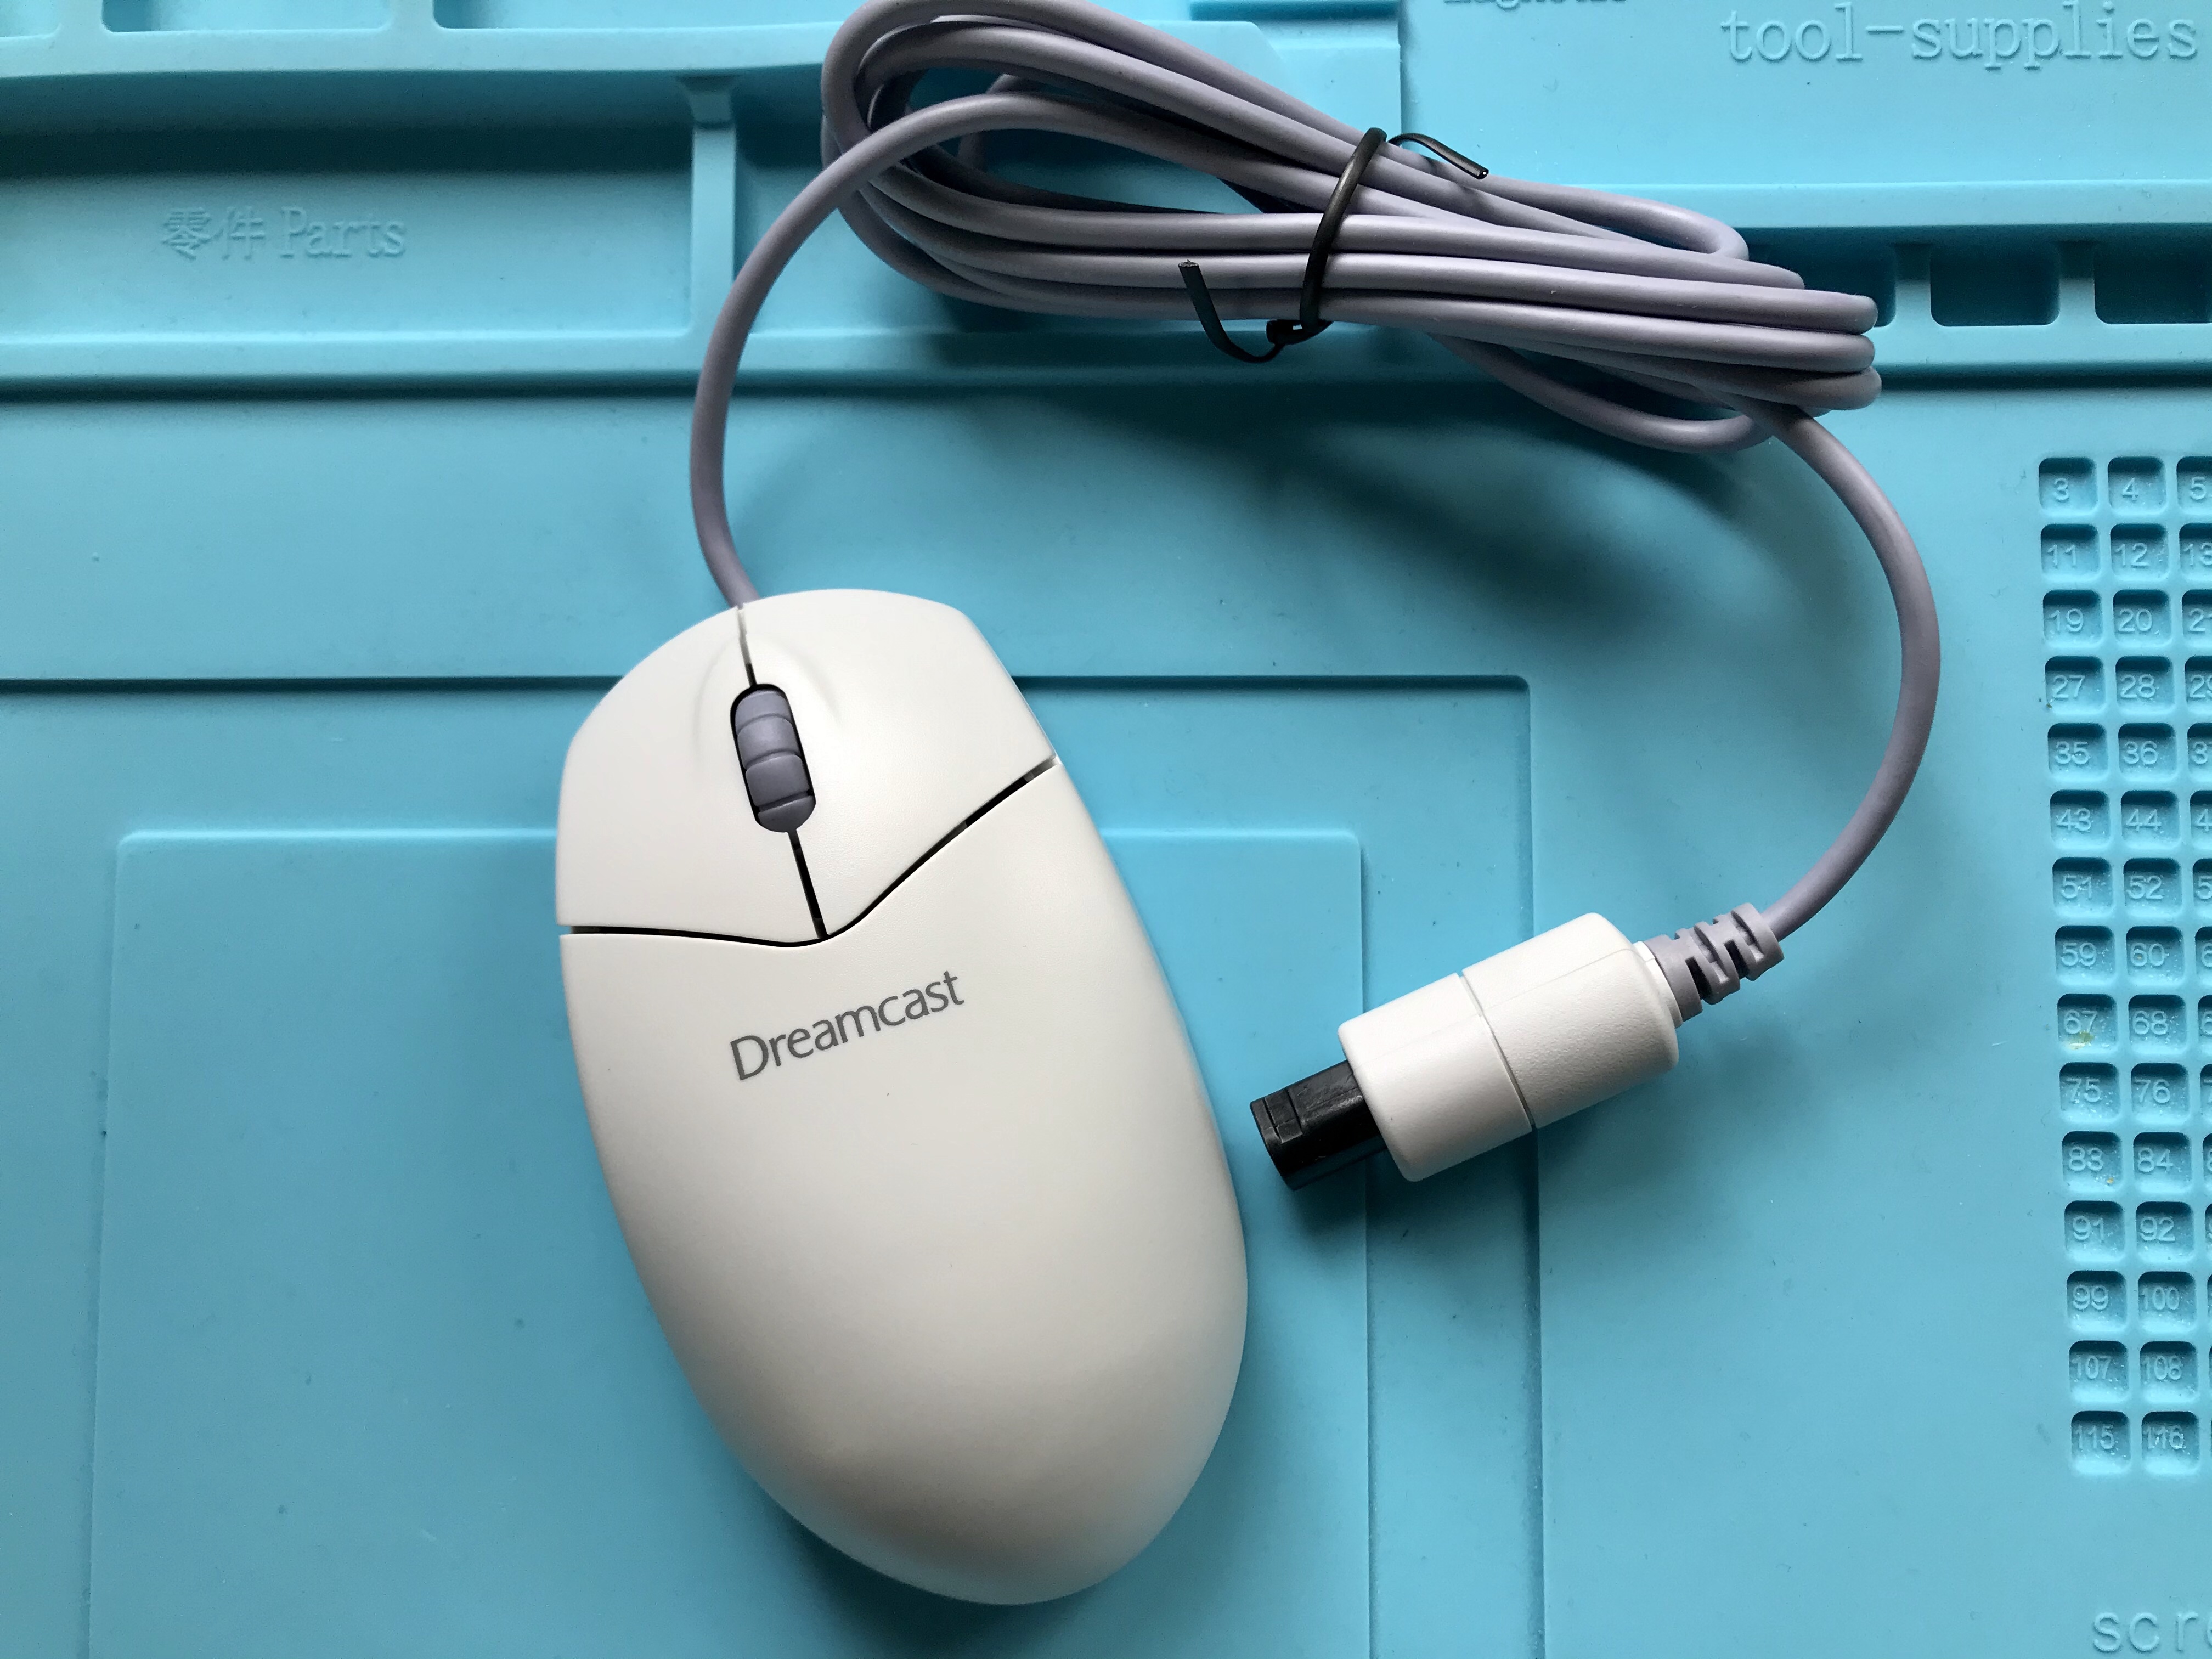 Dreamcast mouse